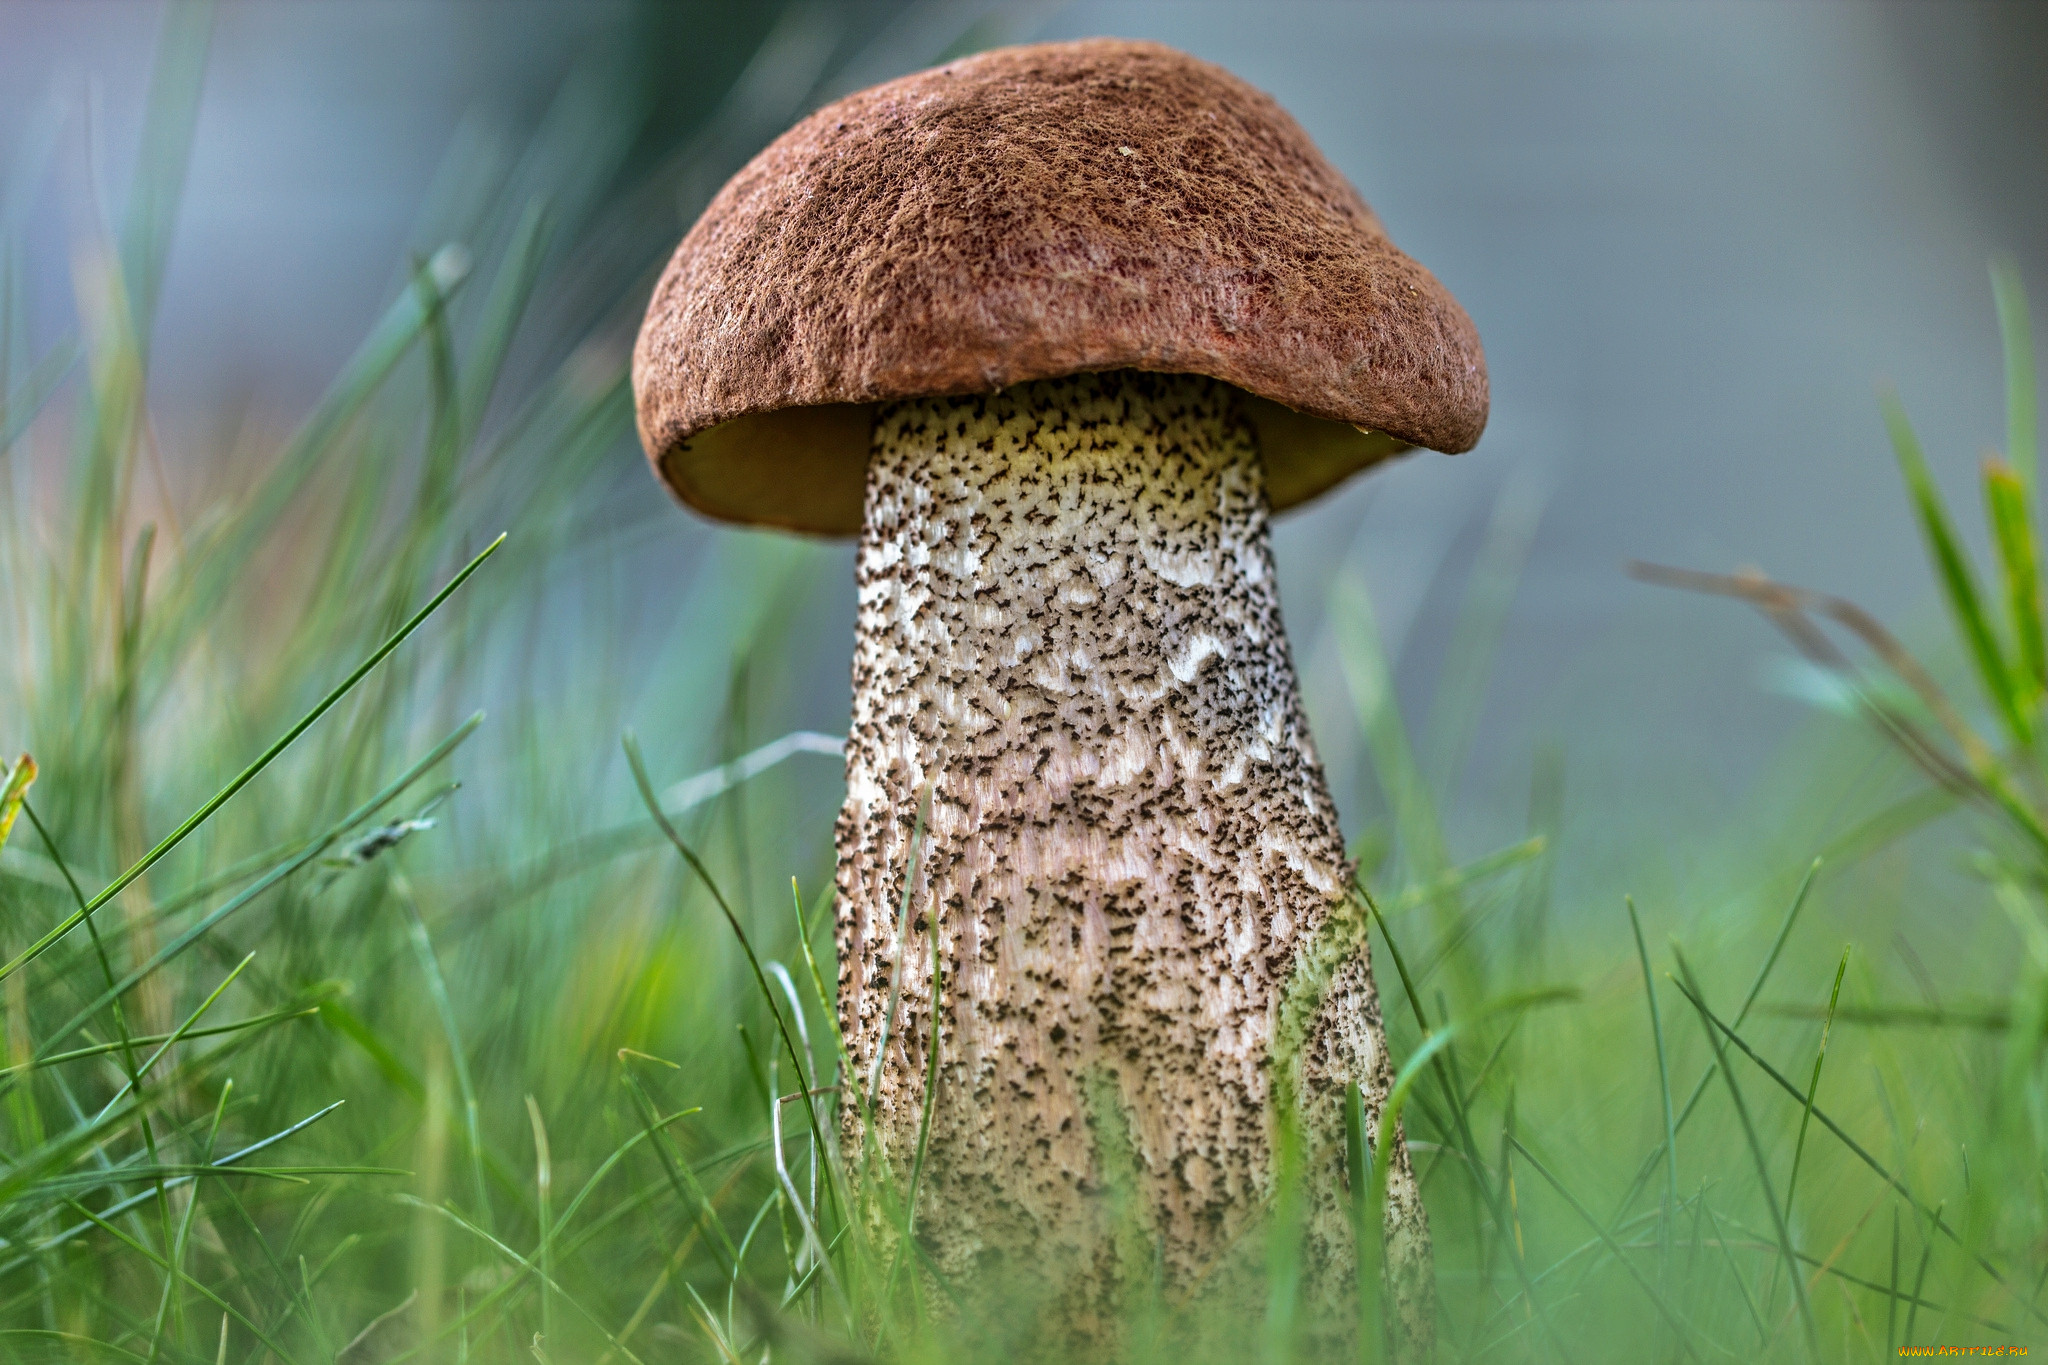 Подберезовик группа грибов. Обабок гриб великан. Подберезовик гриб. Подберёзовик обыкновенный. Съедобные грибы подберезовик.